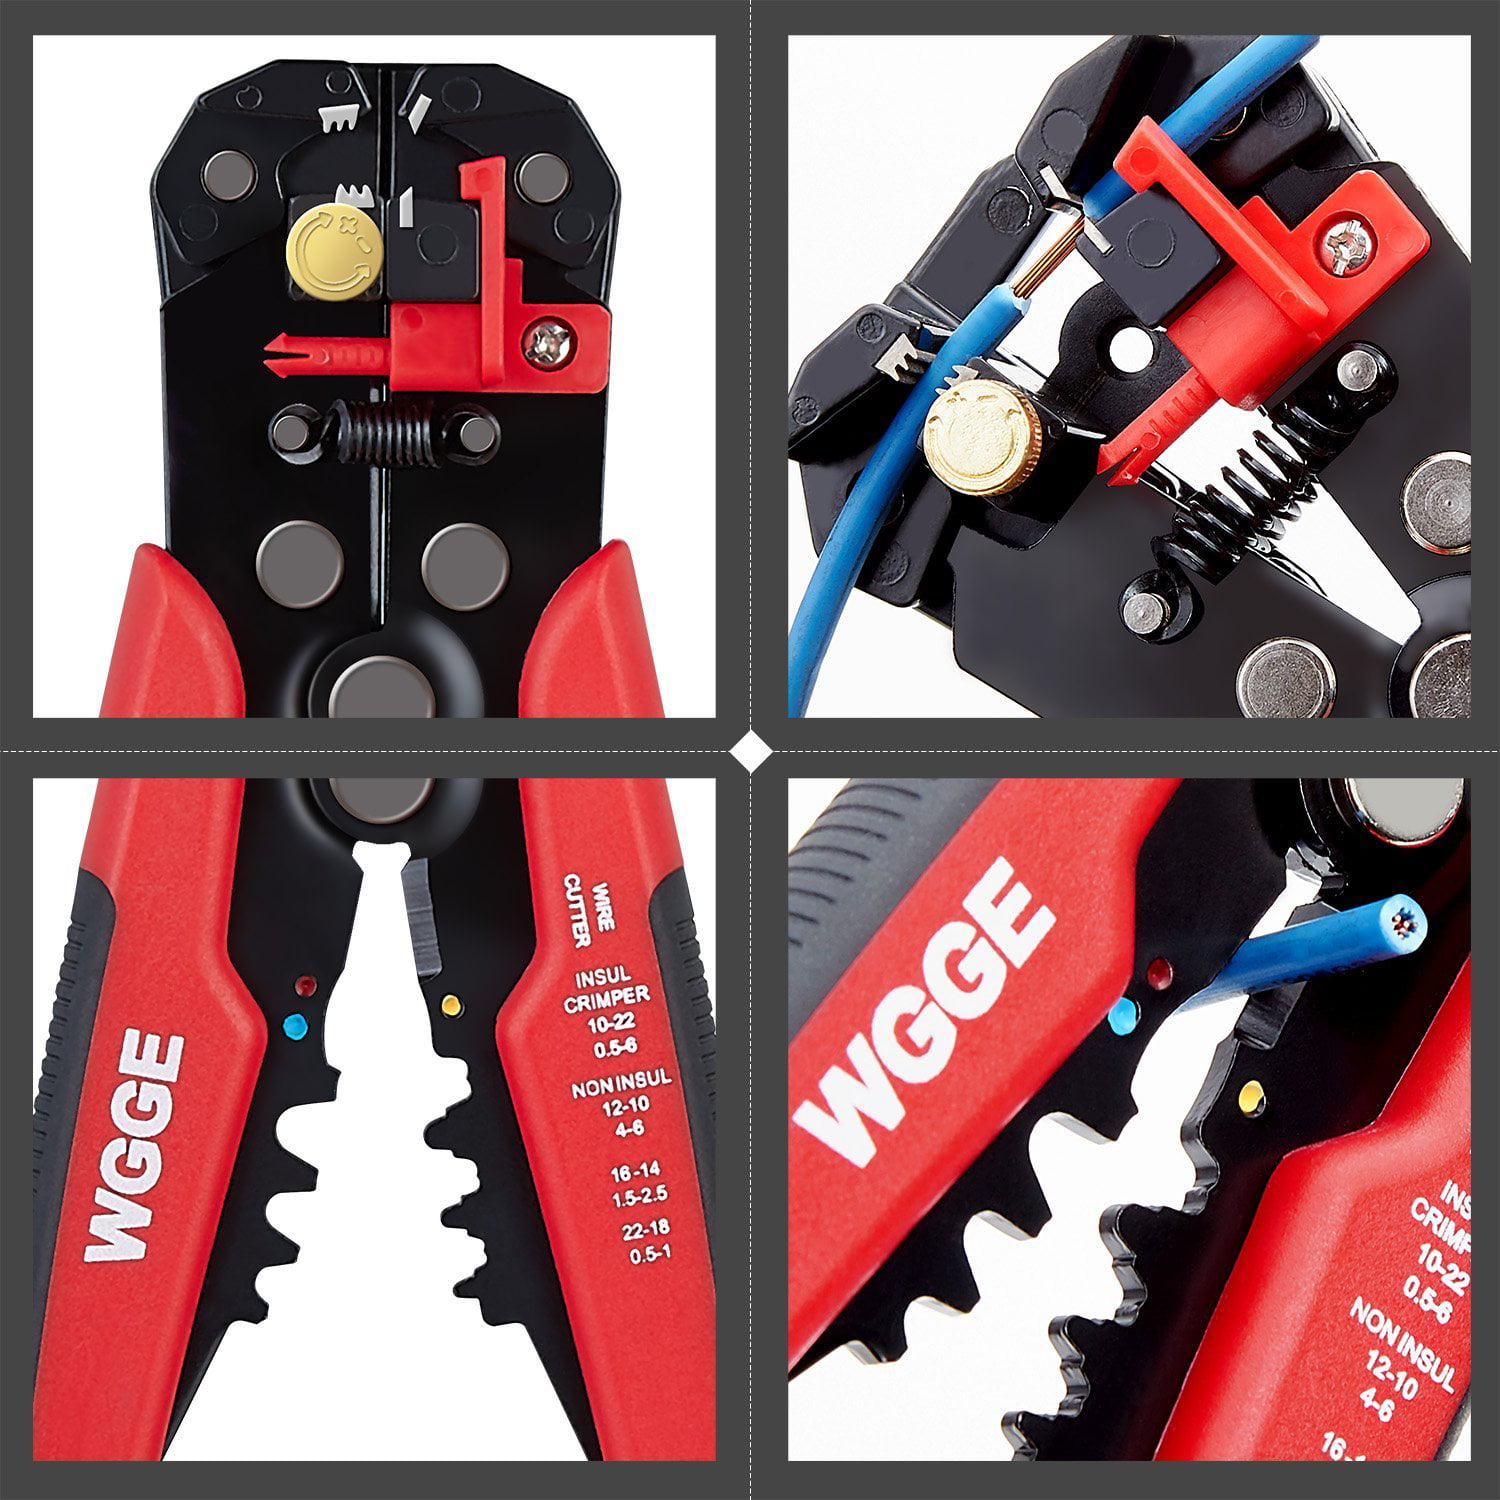 WGGE WG-014 Self-Adjusting Insulation Wire Stripper/cutter/crimper tool 8" 